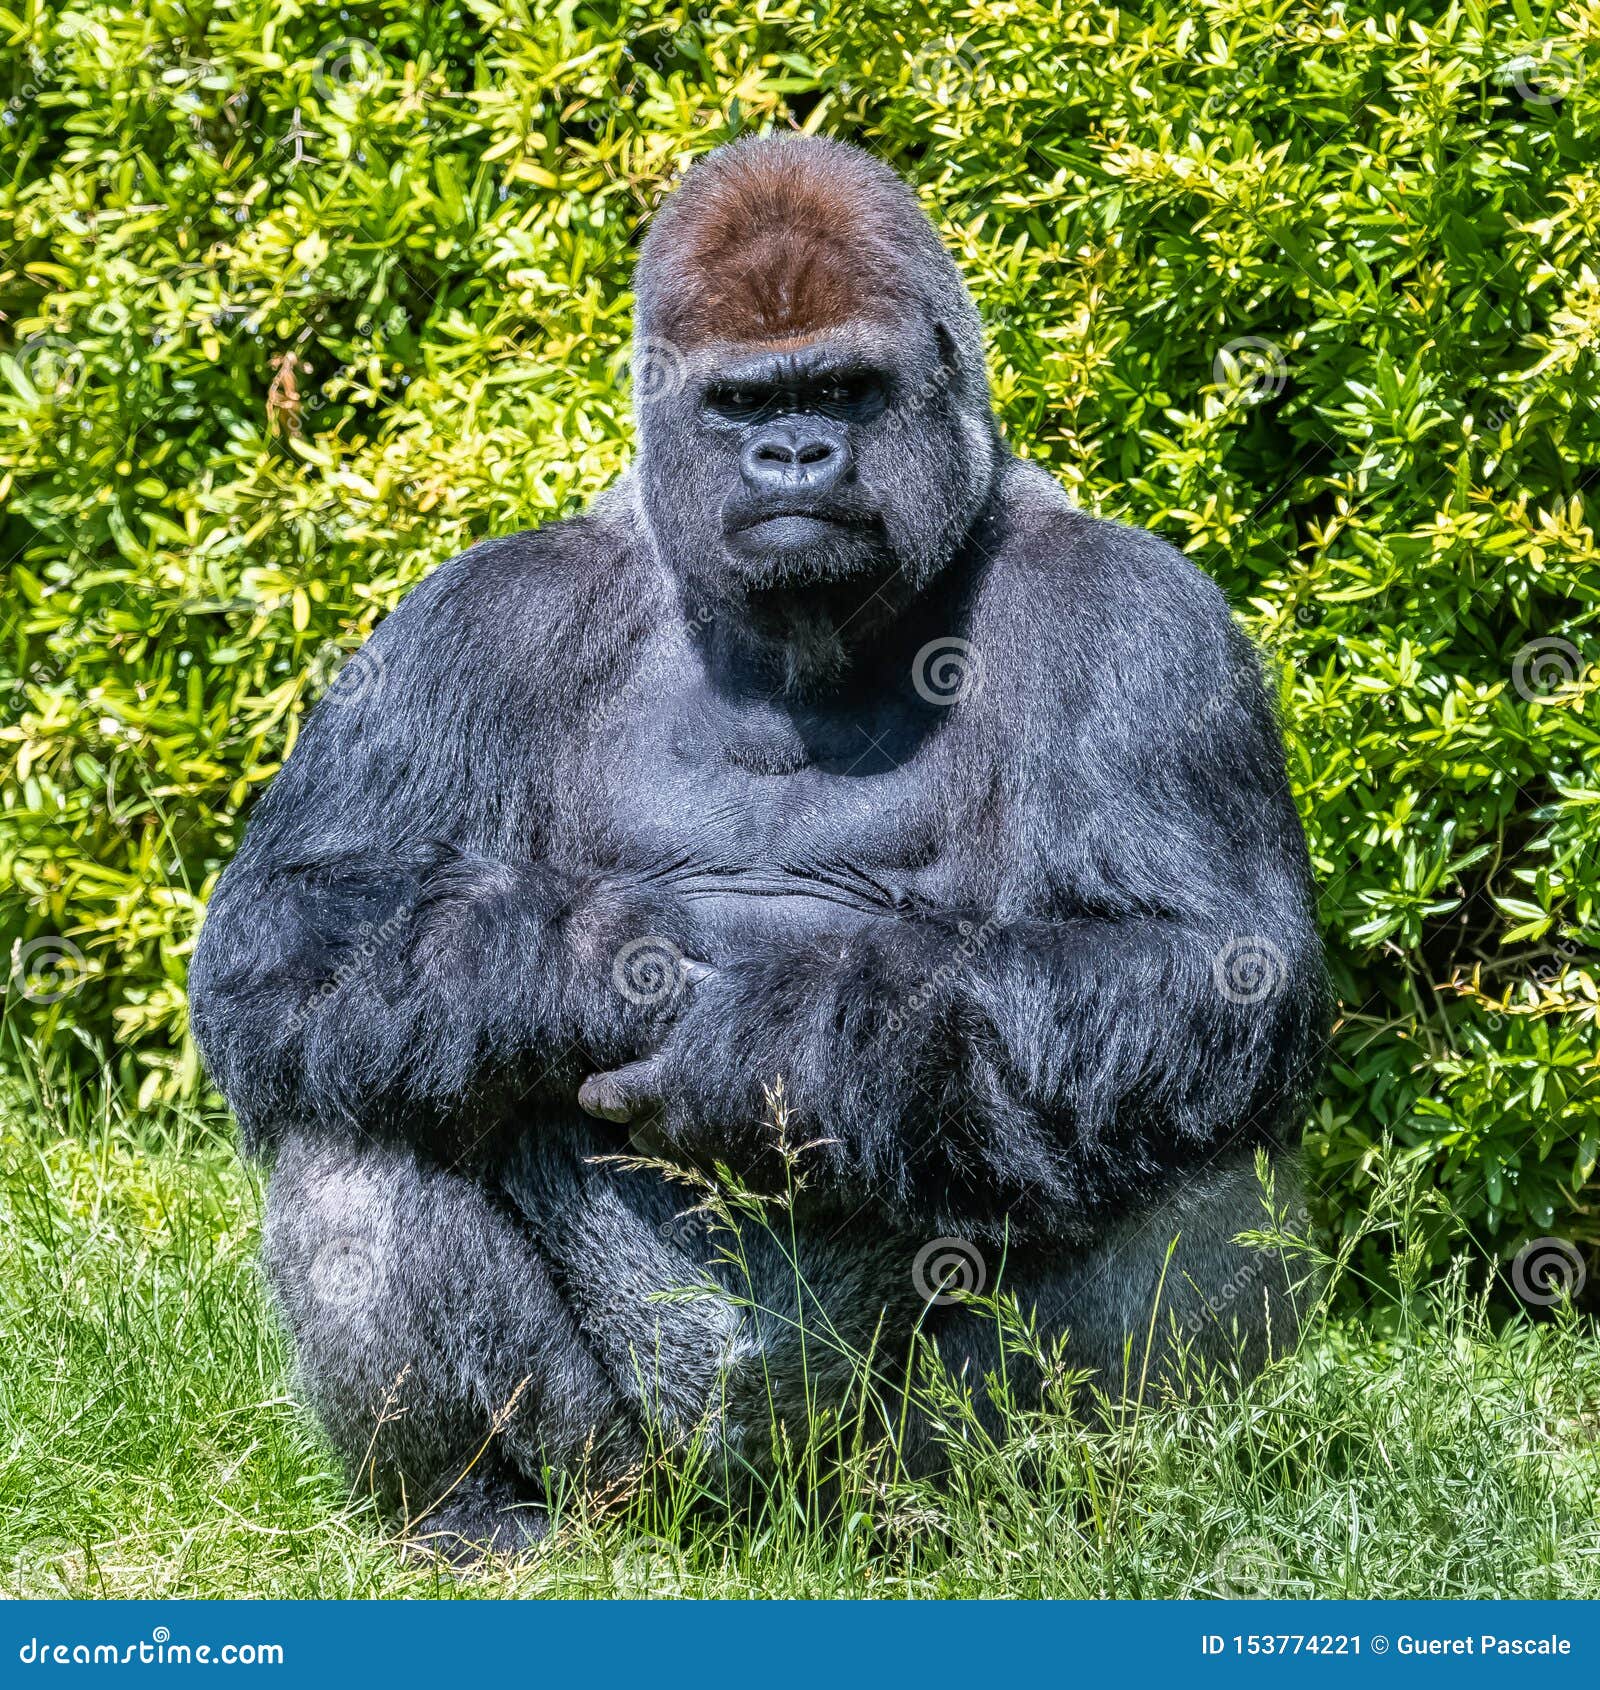  Gorilla monkey  stock image Image of endangered black 